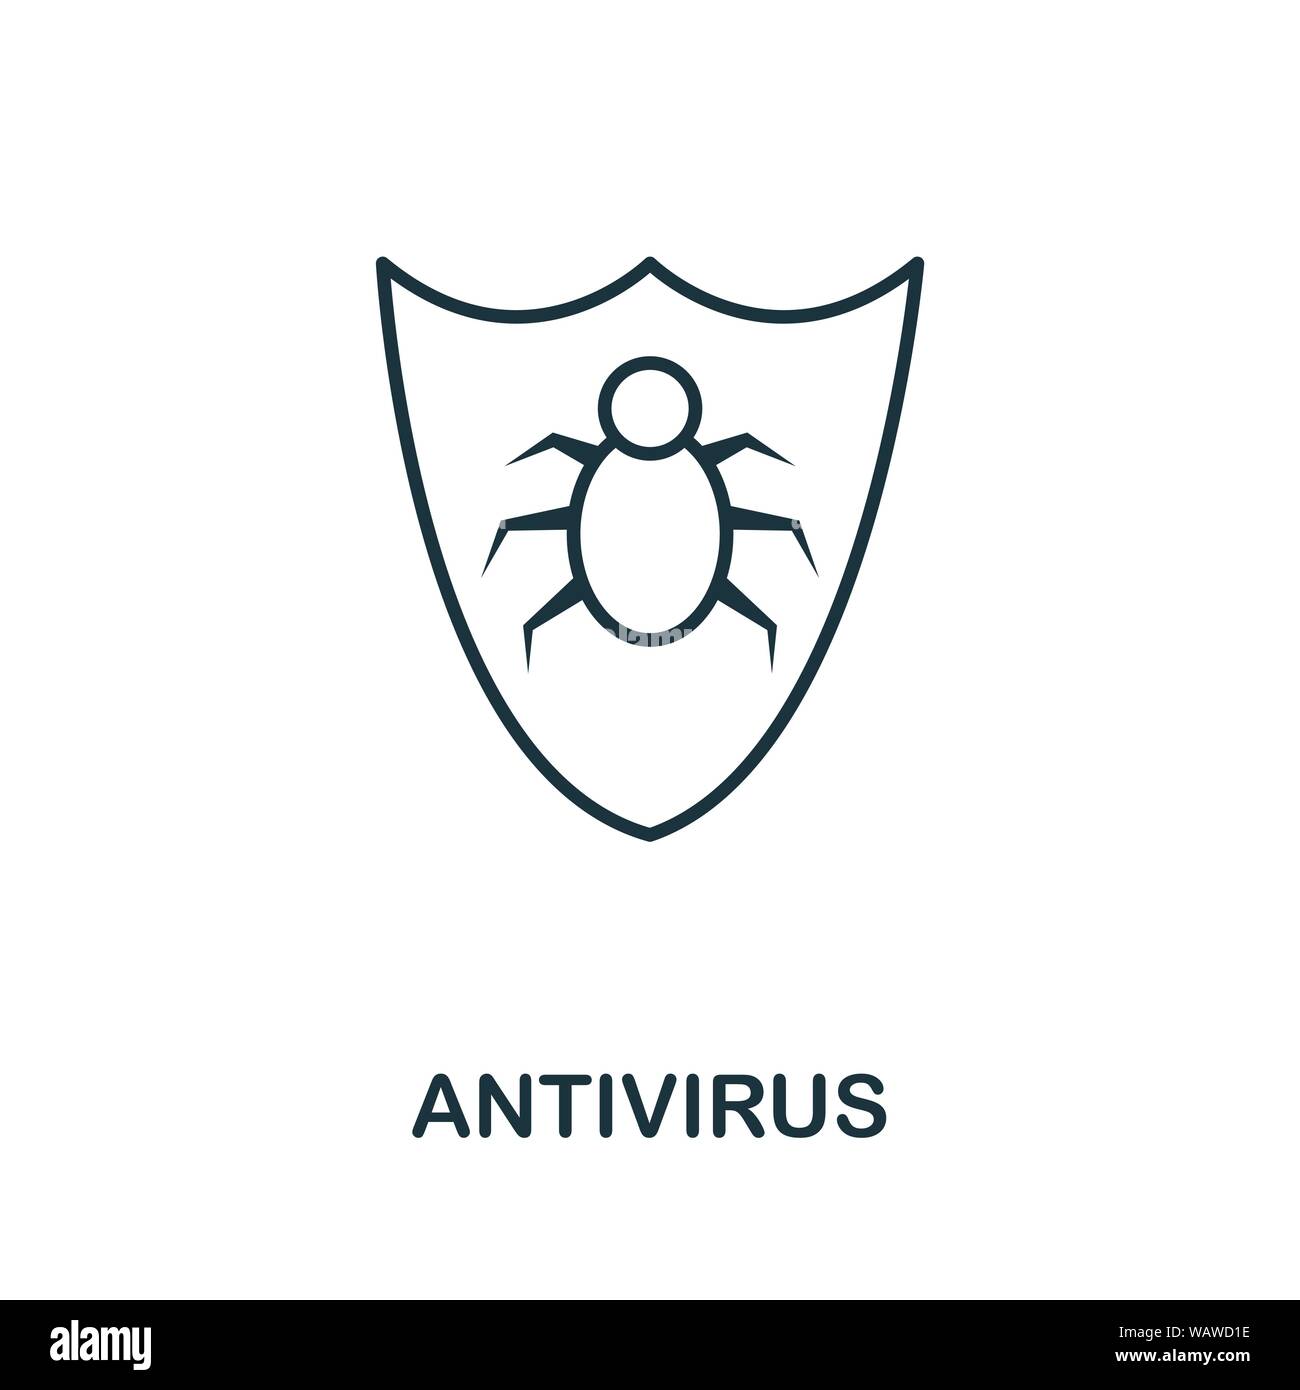 Icona antivirus immagini e fotografie stock ad alta risoluzione - Alamy